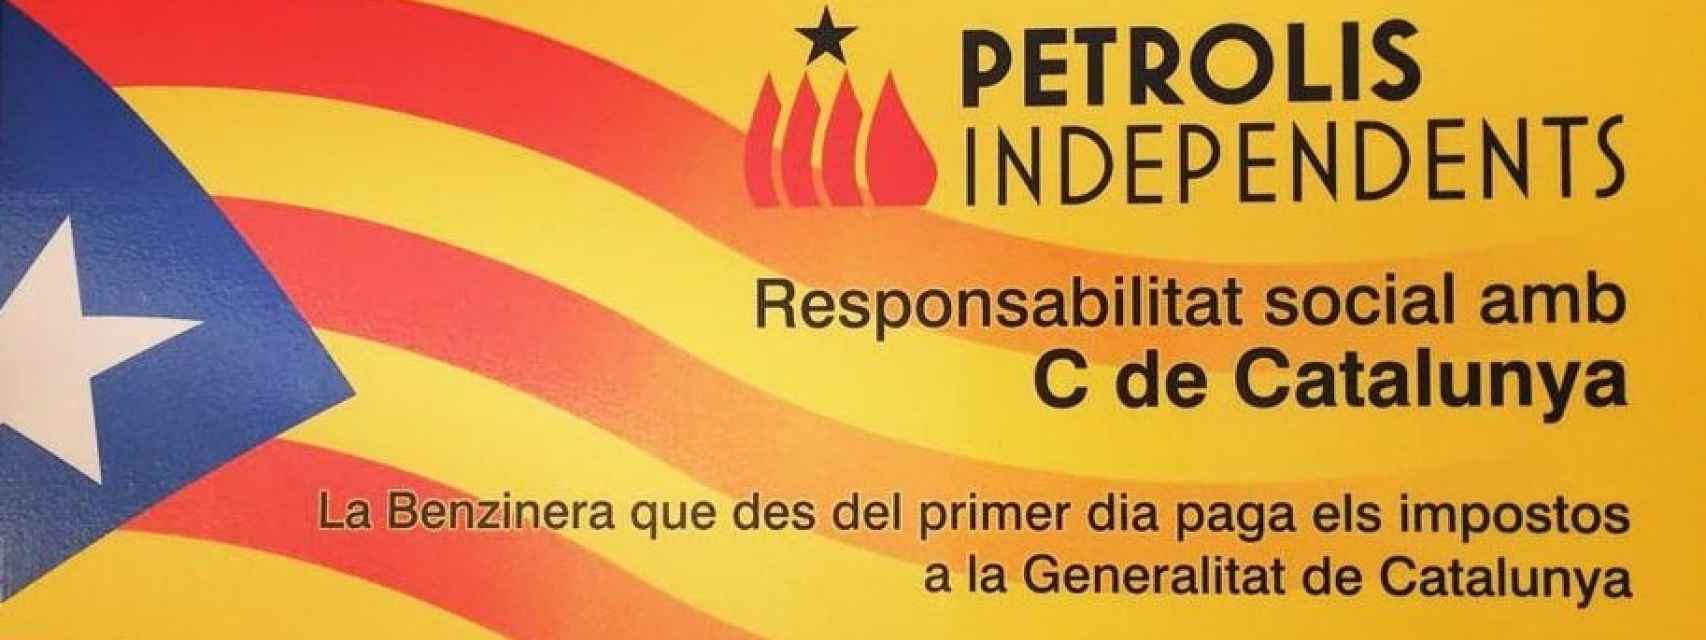 Publicidad del grupo de gasolineras sobre su compromiso con el nuevo Estado catalán.